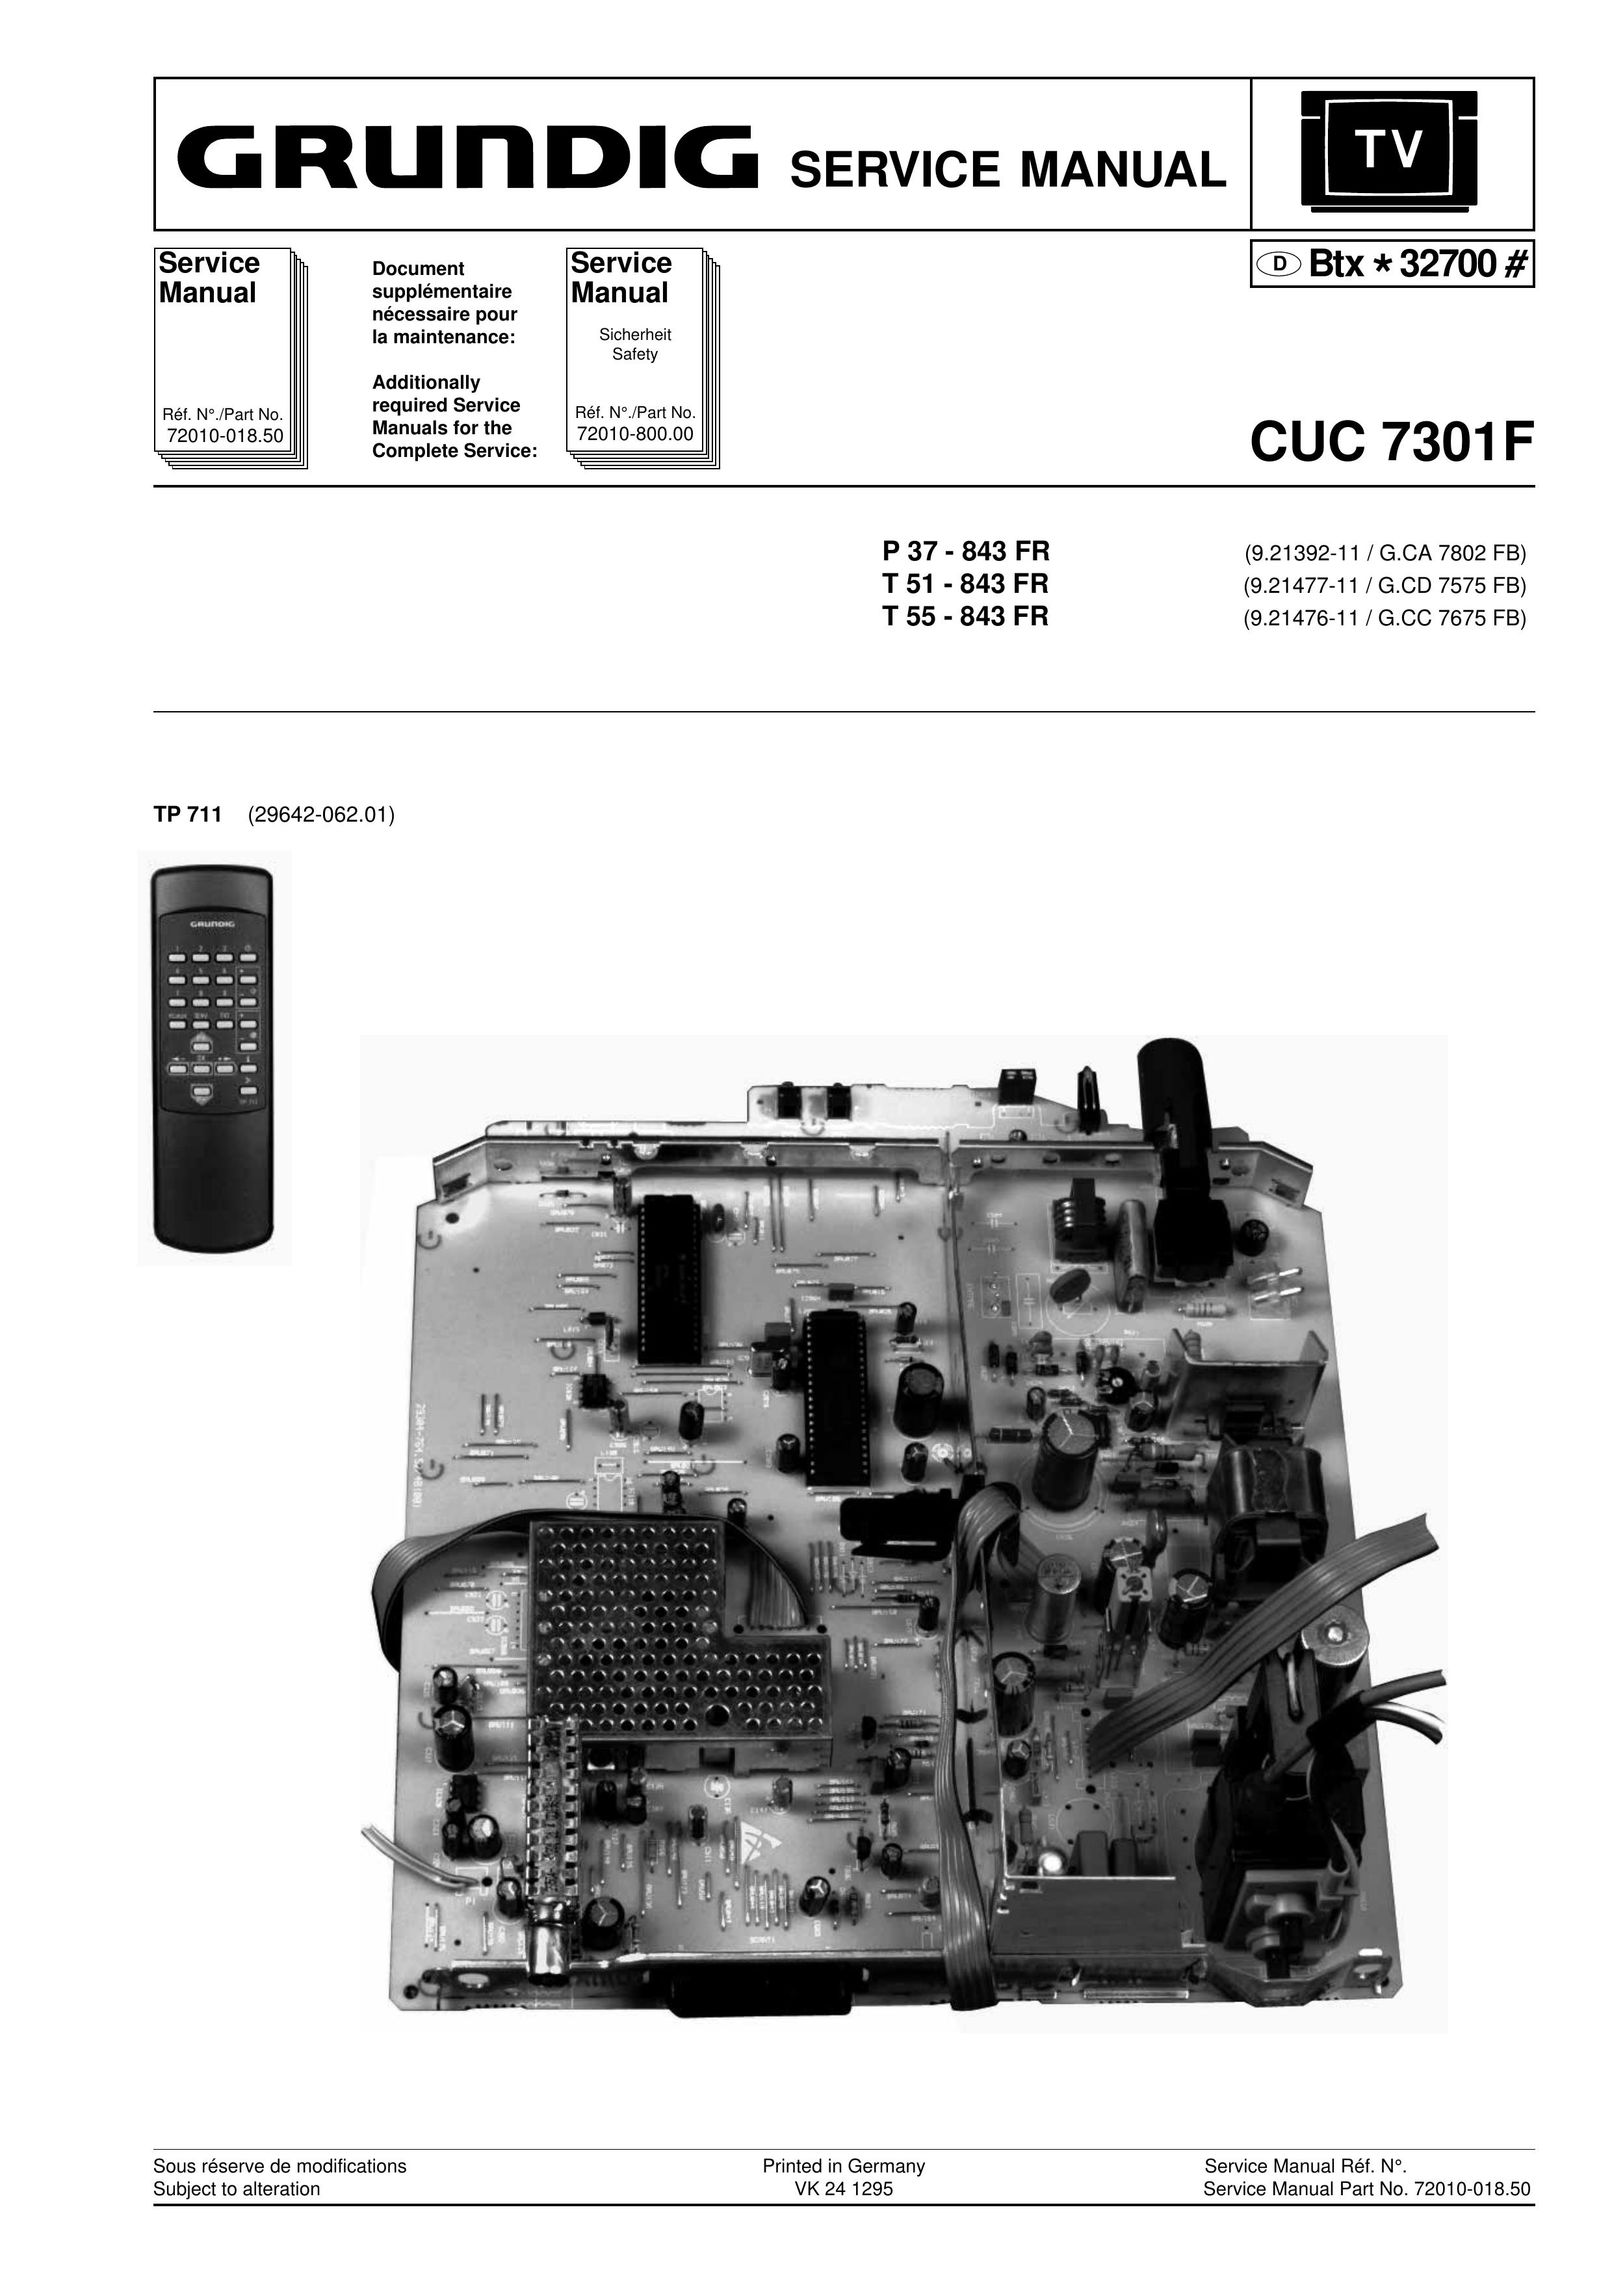 Grundig CUC 7301F Grinder User Manual